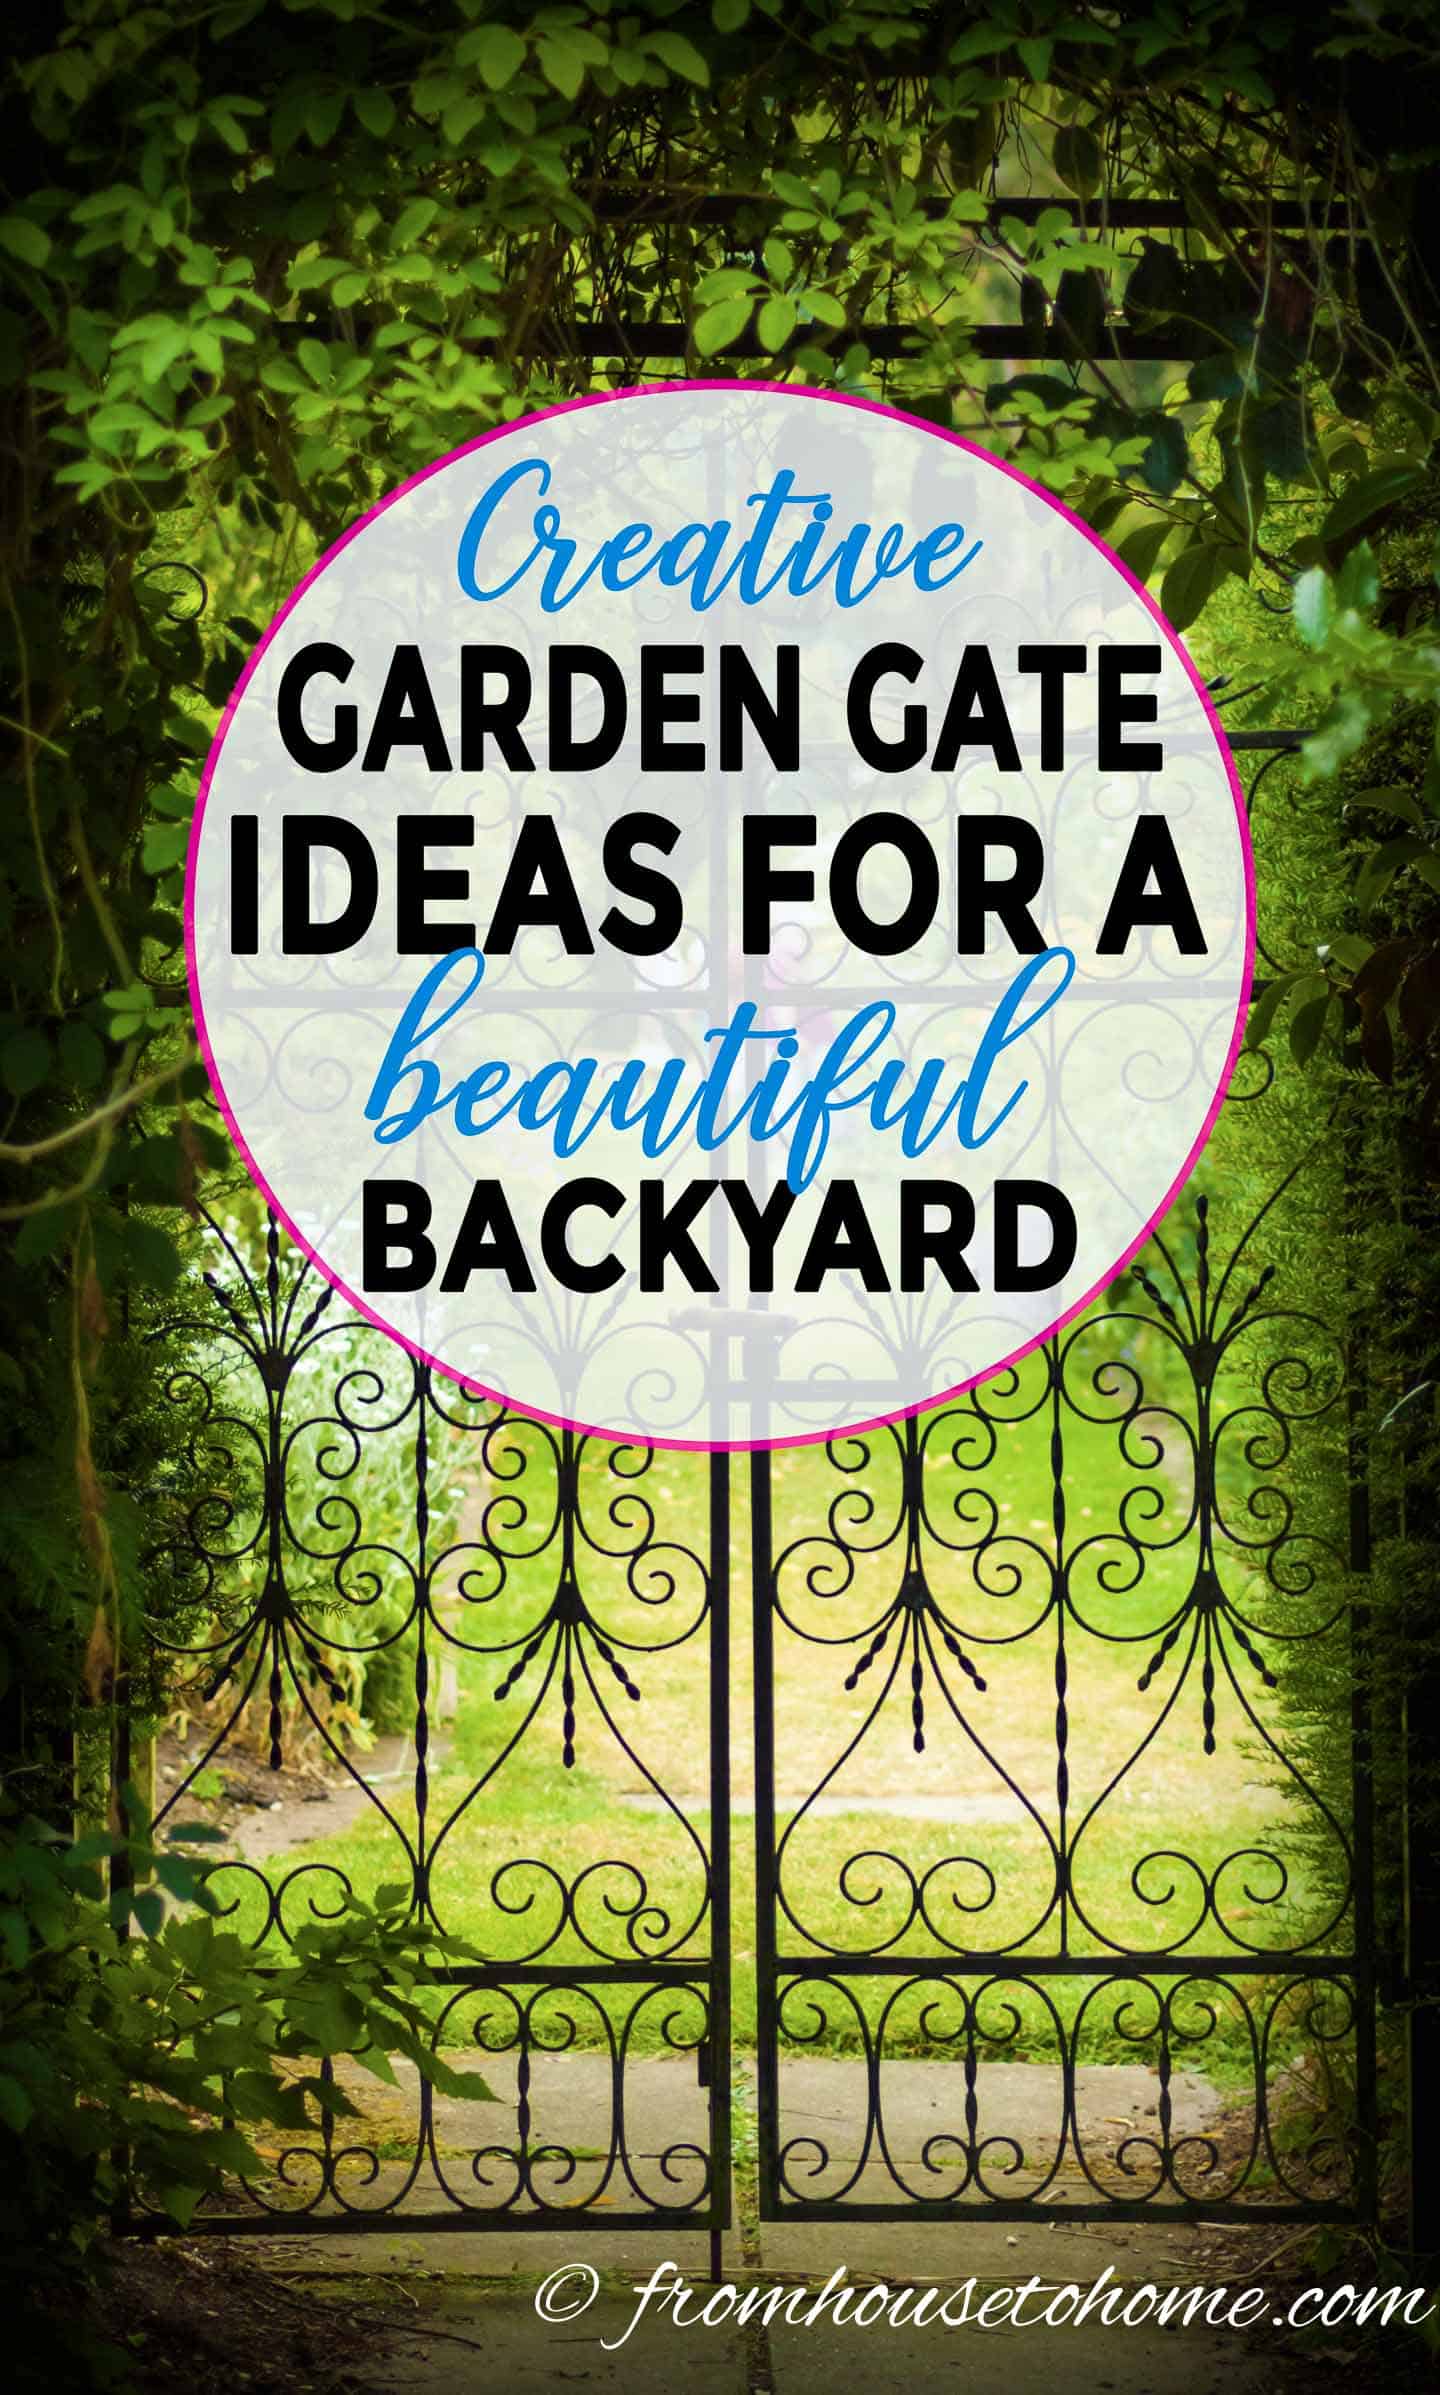 Creative garden gate ideas for a beautiful backyard